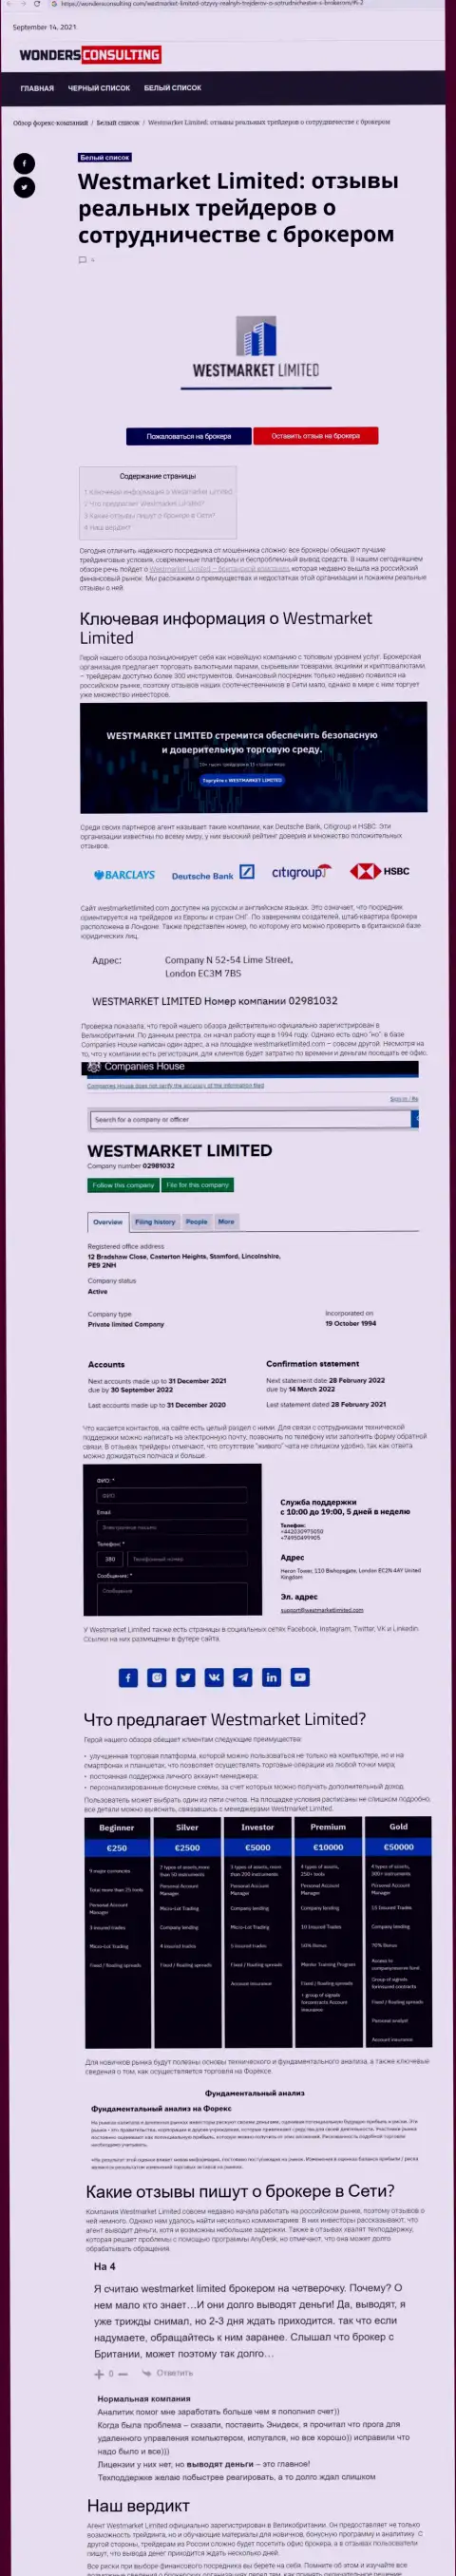 Информационный материал о ФОРЕКС организации West Market Limited на web-сайте wondersconsulting com